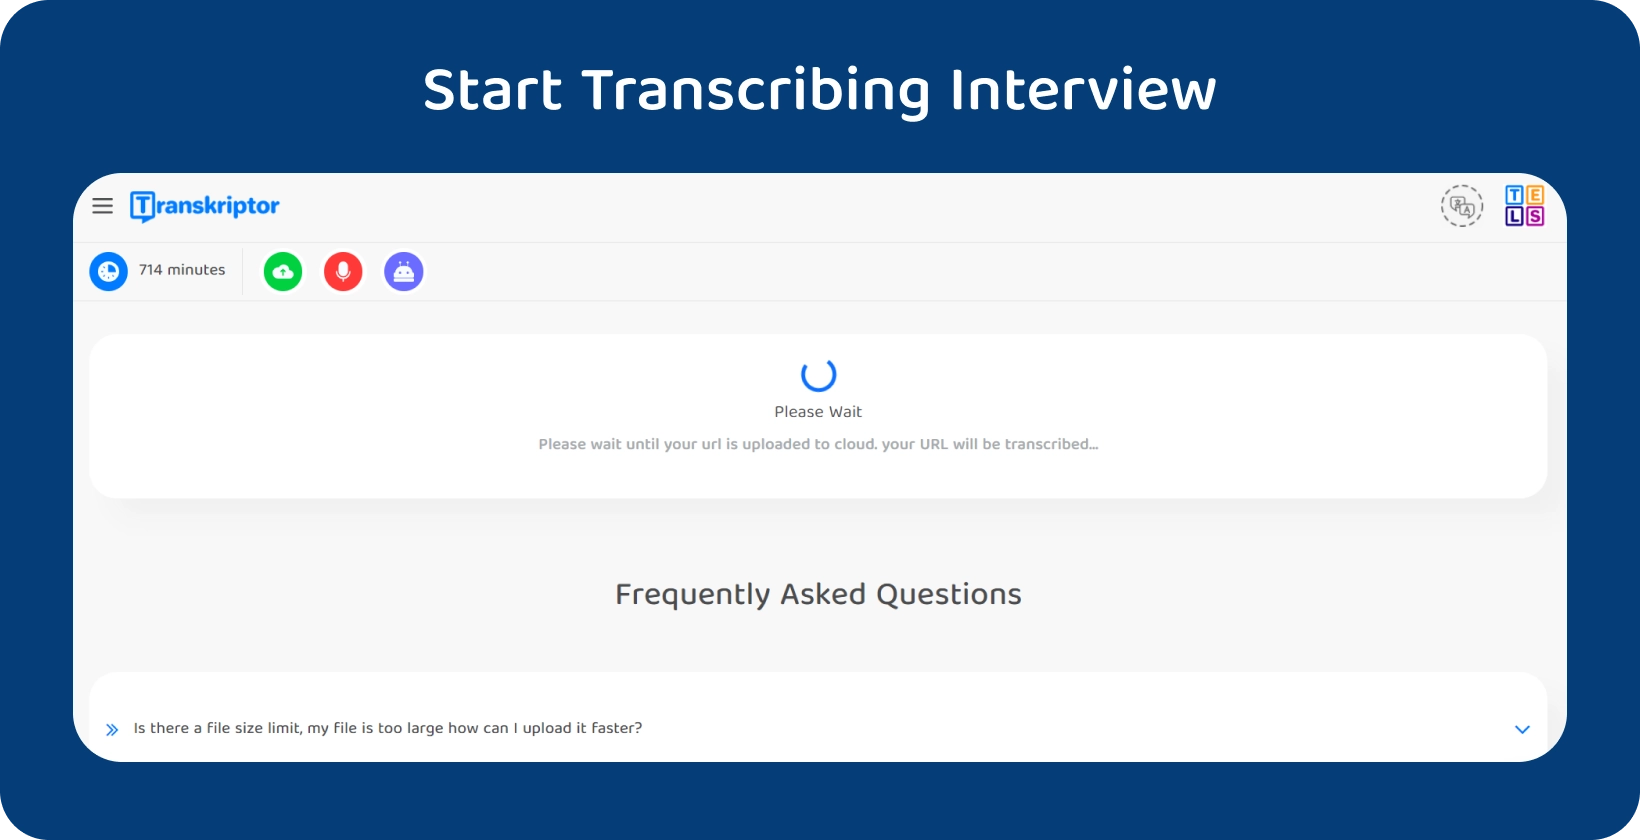 Započnite transkripciju disertacije s Transkriptor, prikazujući 714-minutni intervju koji čeka na obradu.